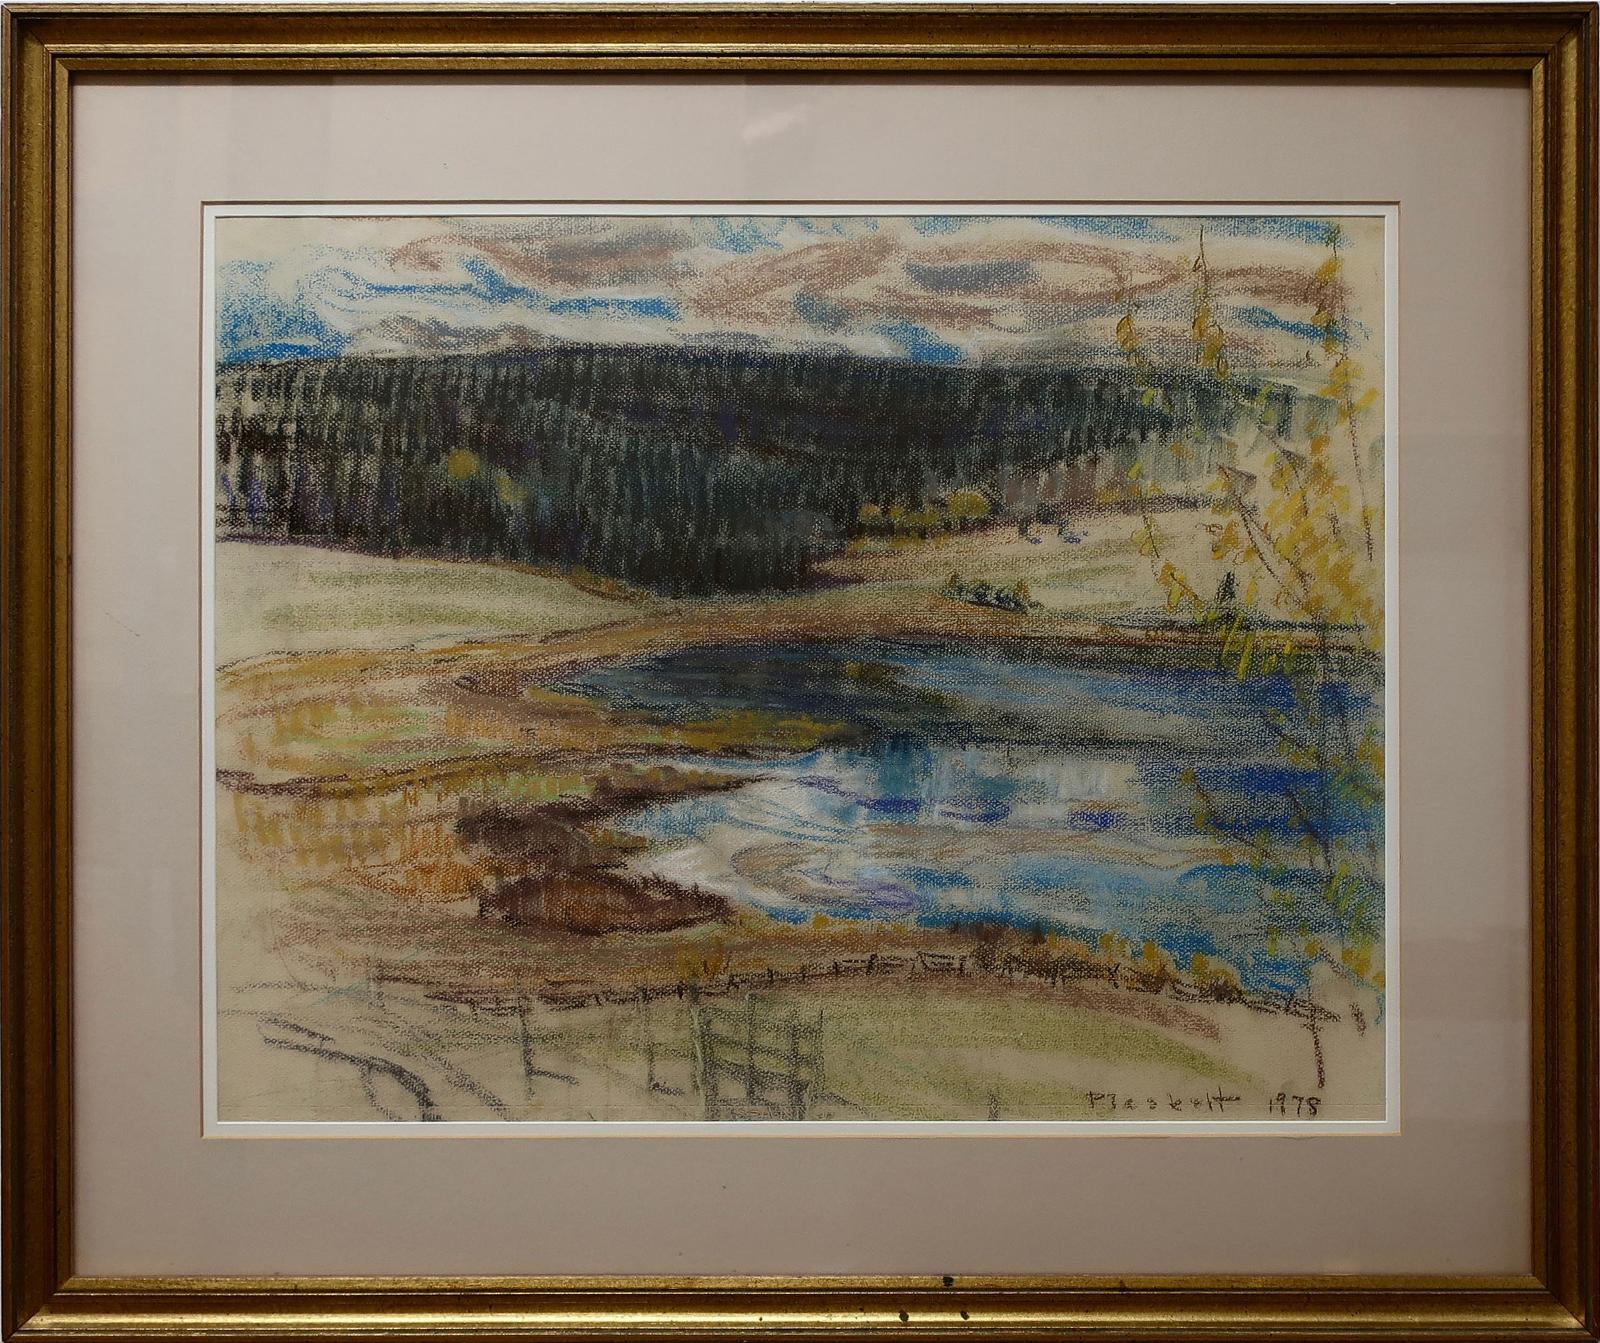 Joseph (Joe) Francis Plaskett (1918-2014) - Hundred Mile Lake, B.C.